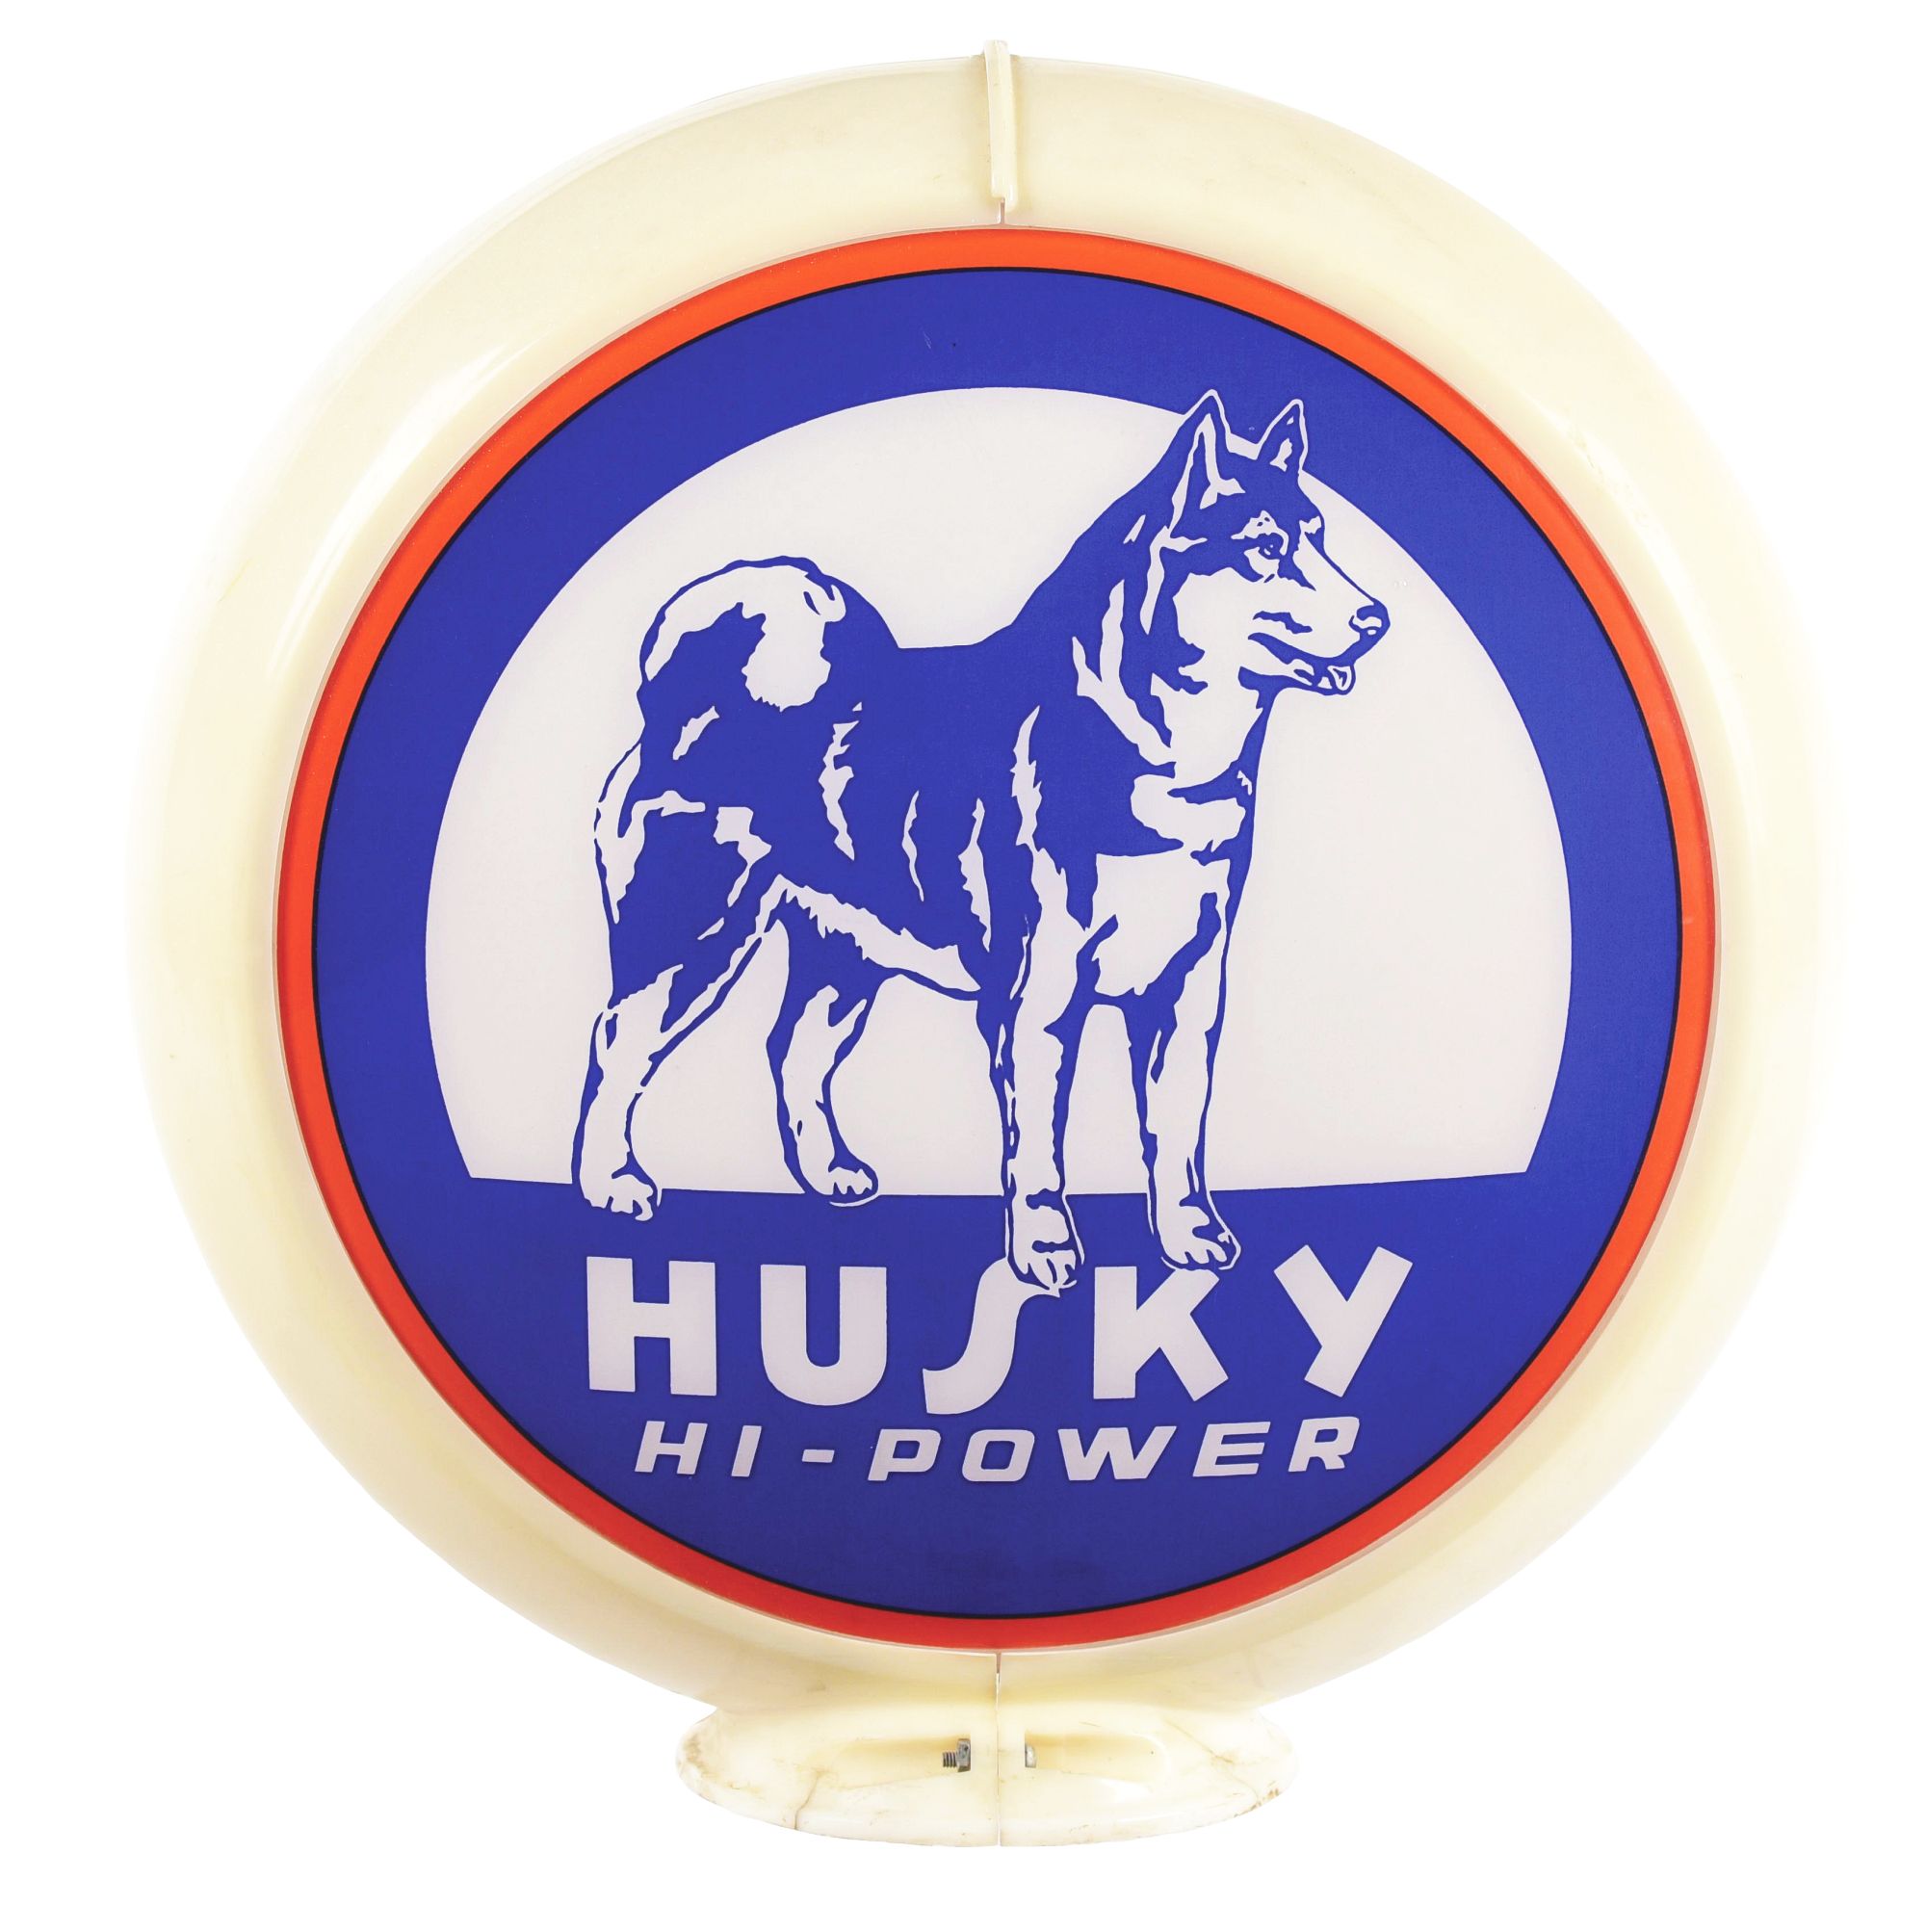 HUSKY HI-POWER GASOLINE COMPLETE GLOBE ON CAPCO